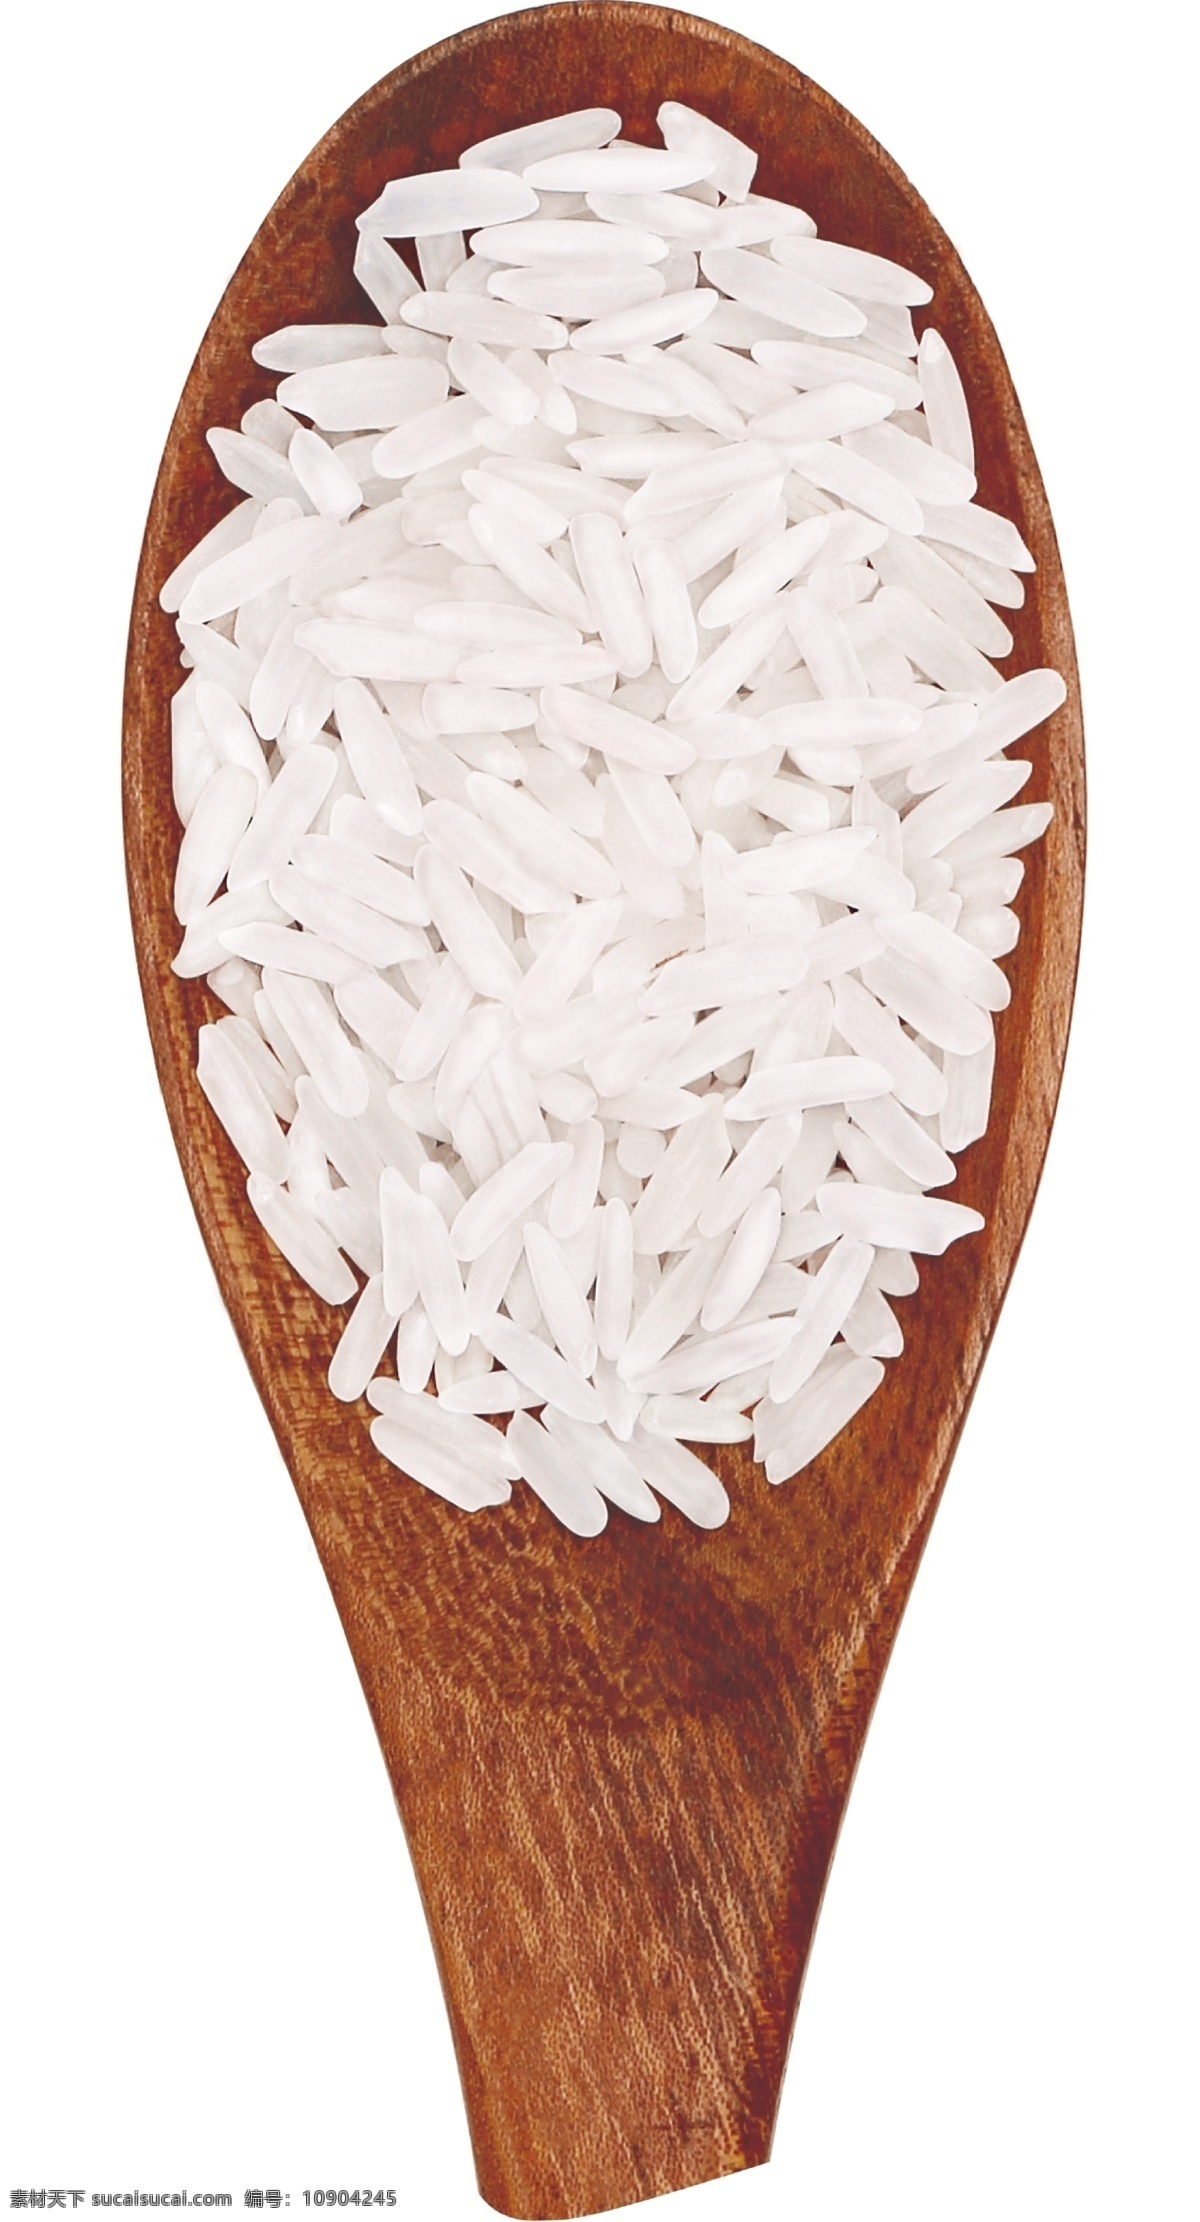 大米图片 大米 米 米粒 糯米 香米 干货 分层